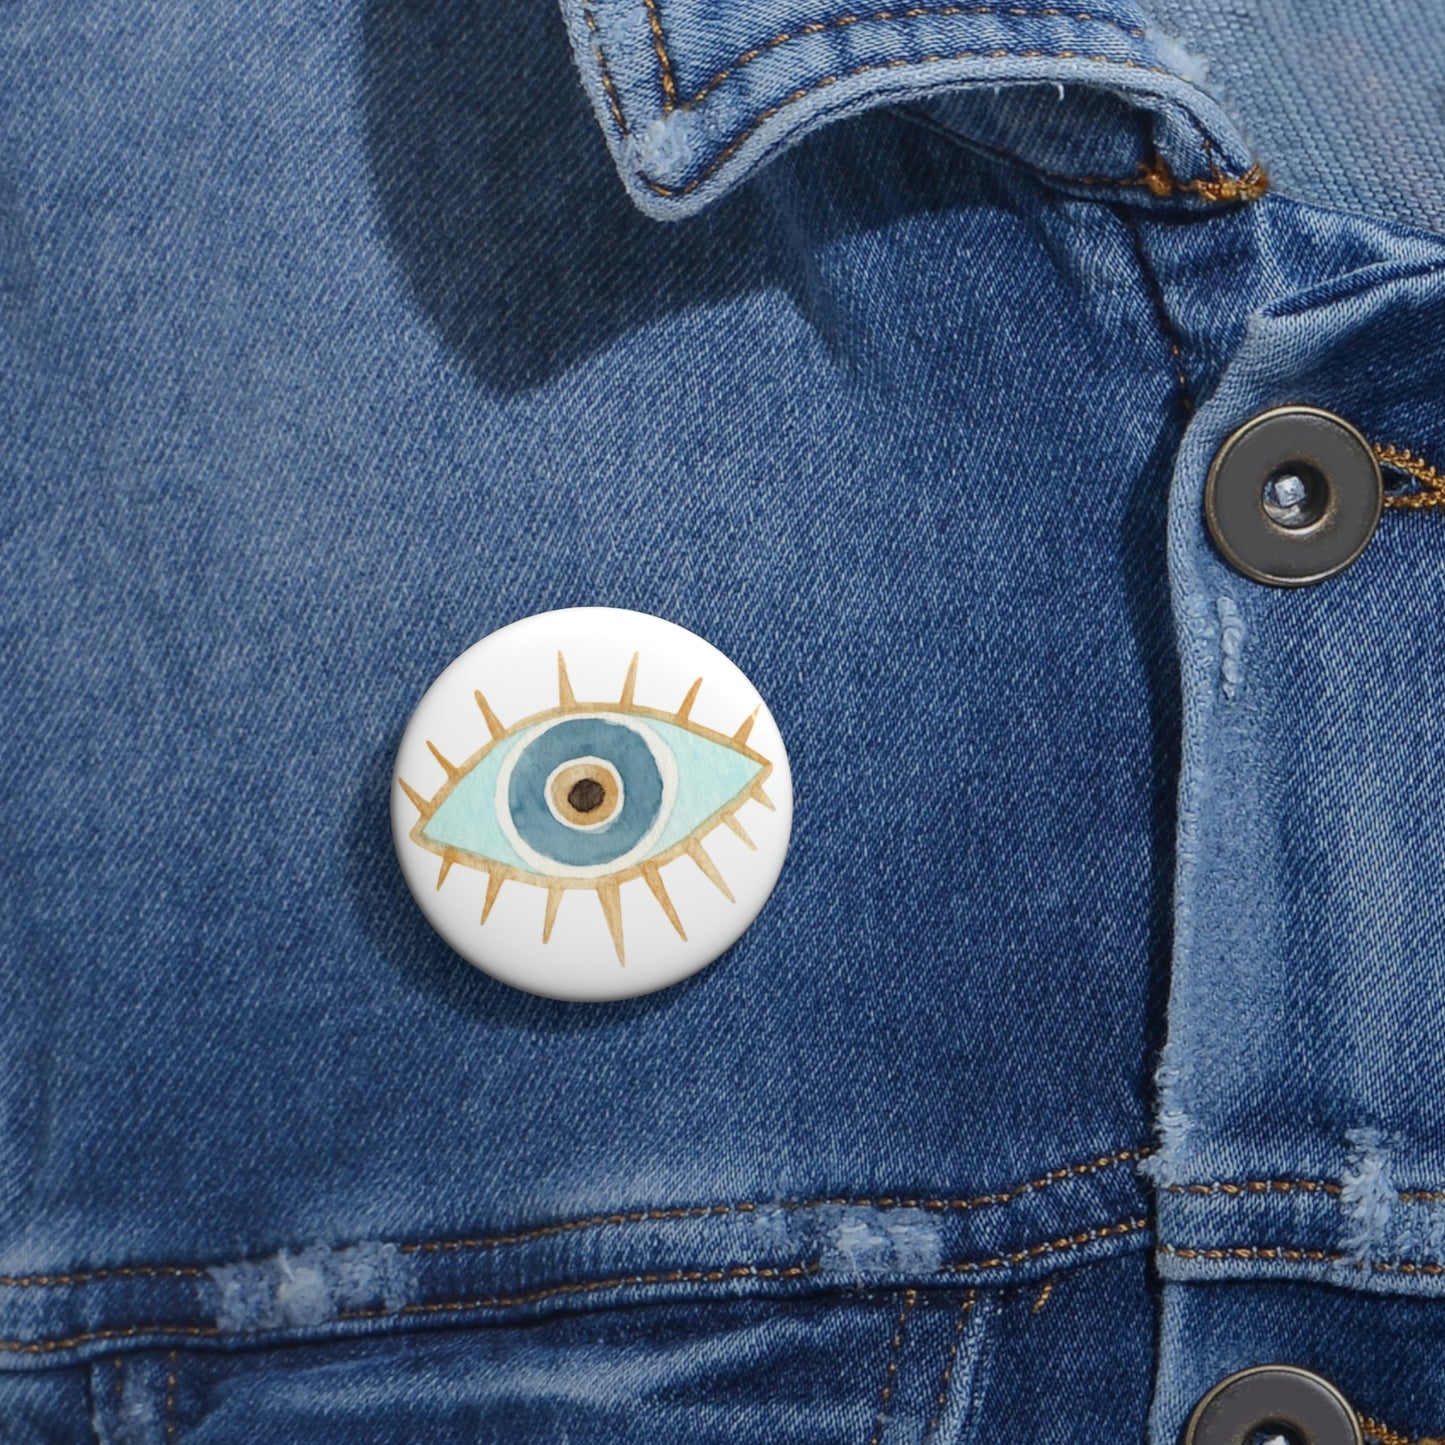 Eye Pin Button